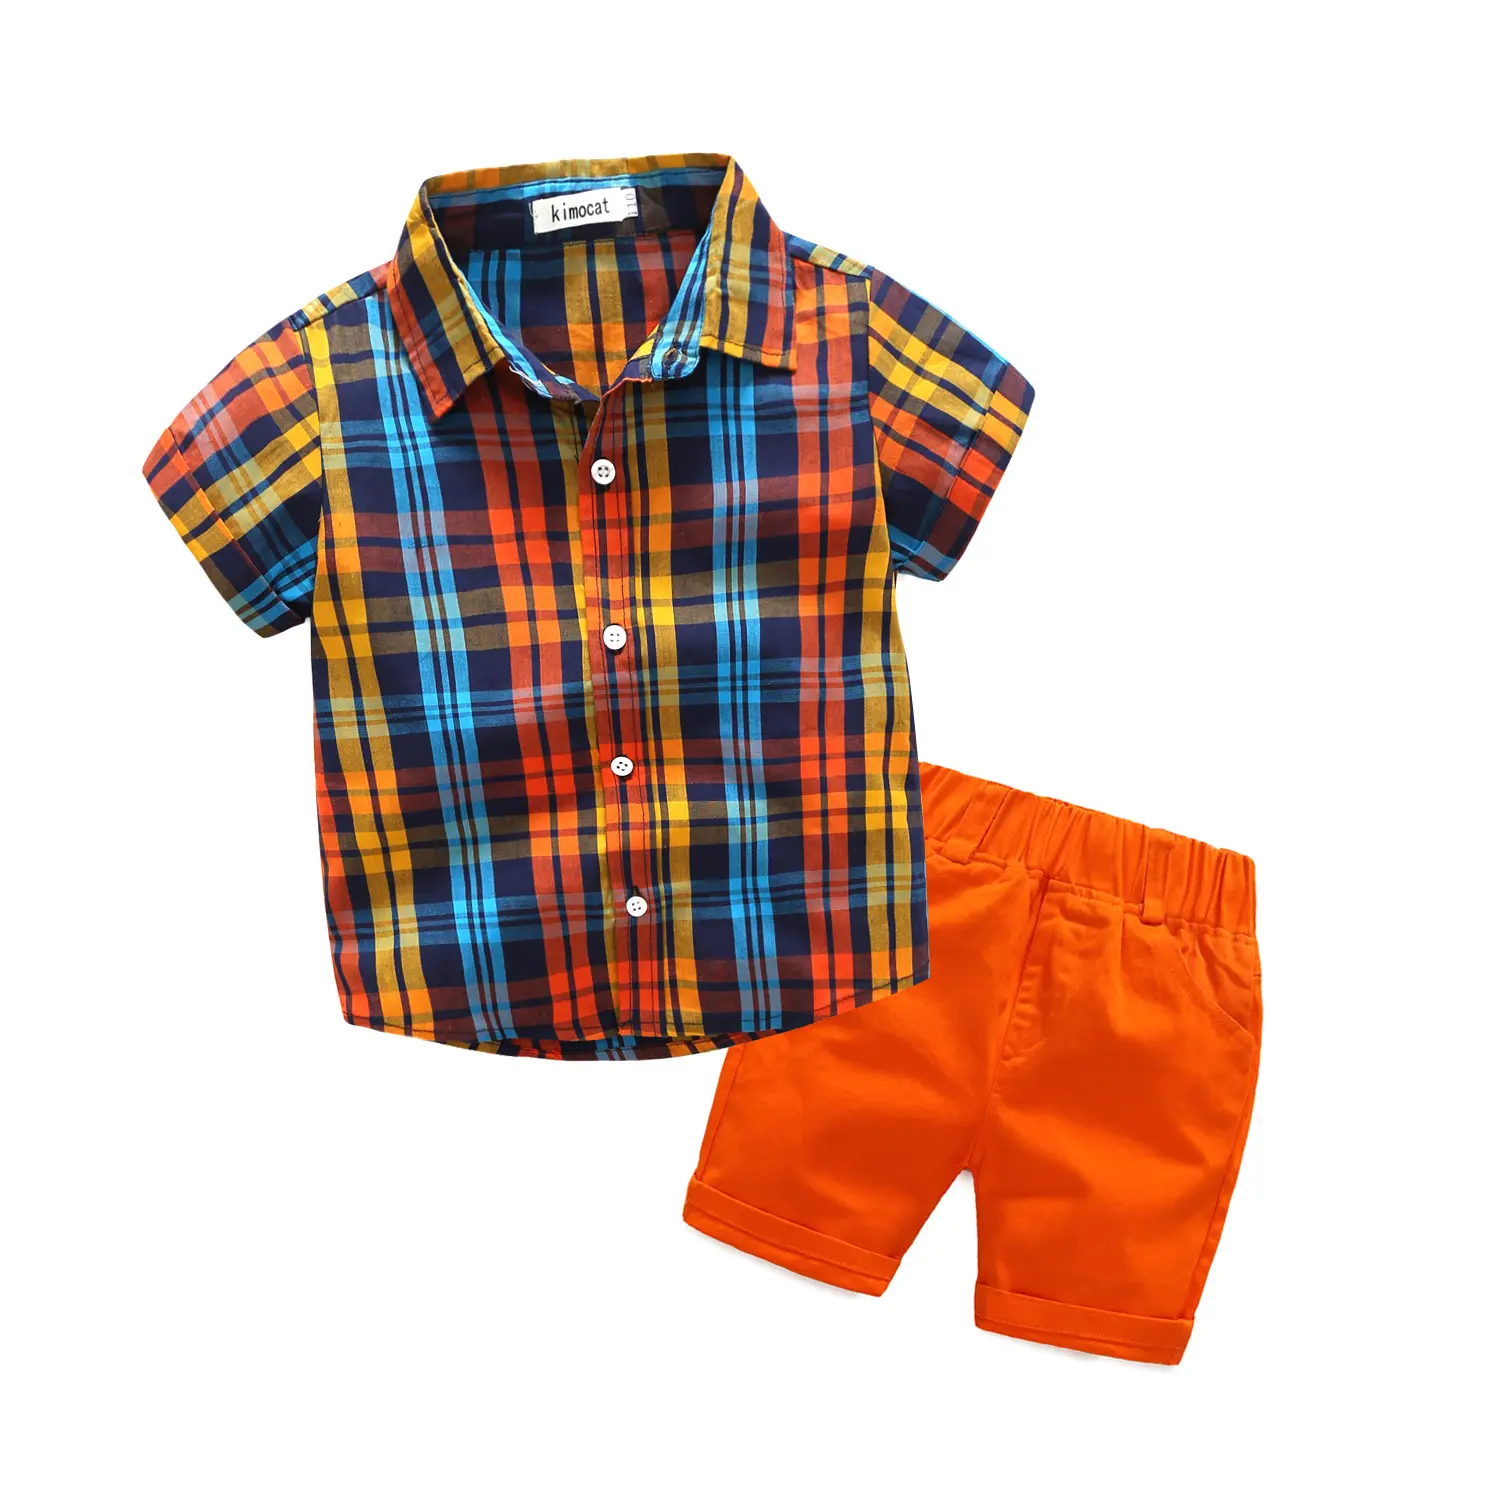 Yellow System Summer New Children Plaid Shirt Orange Shorts Fresh 2PCS Suit Boys Fashion Clothes Suit Boy Beach Clothes Suit